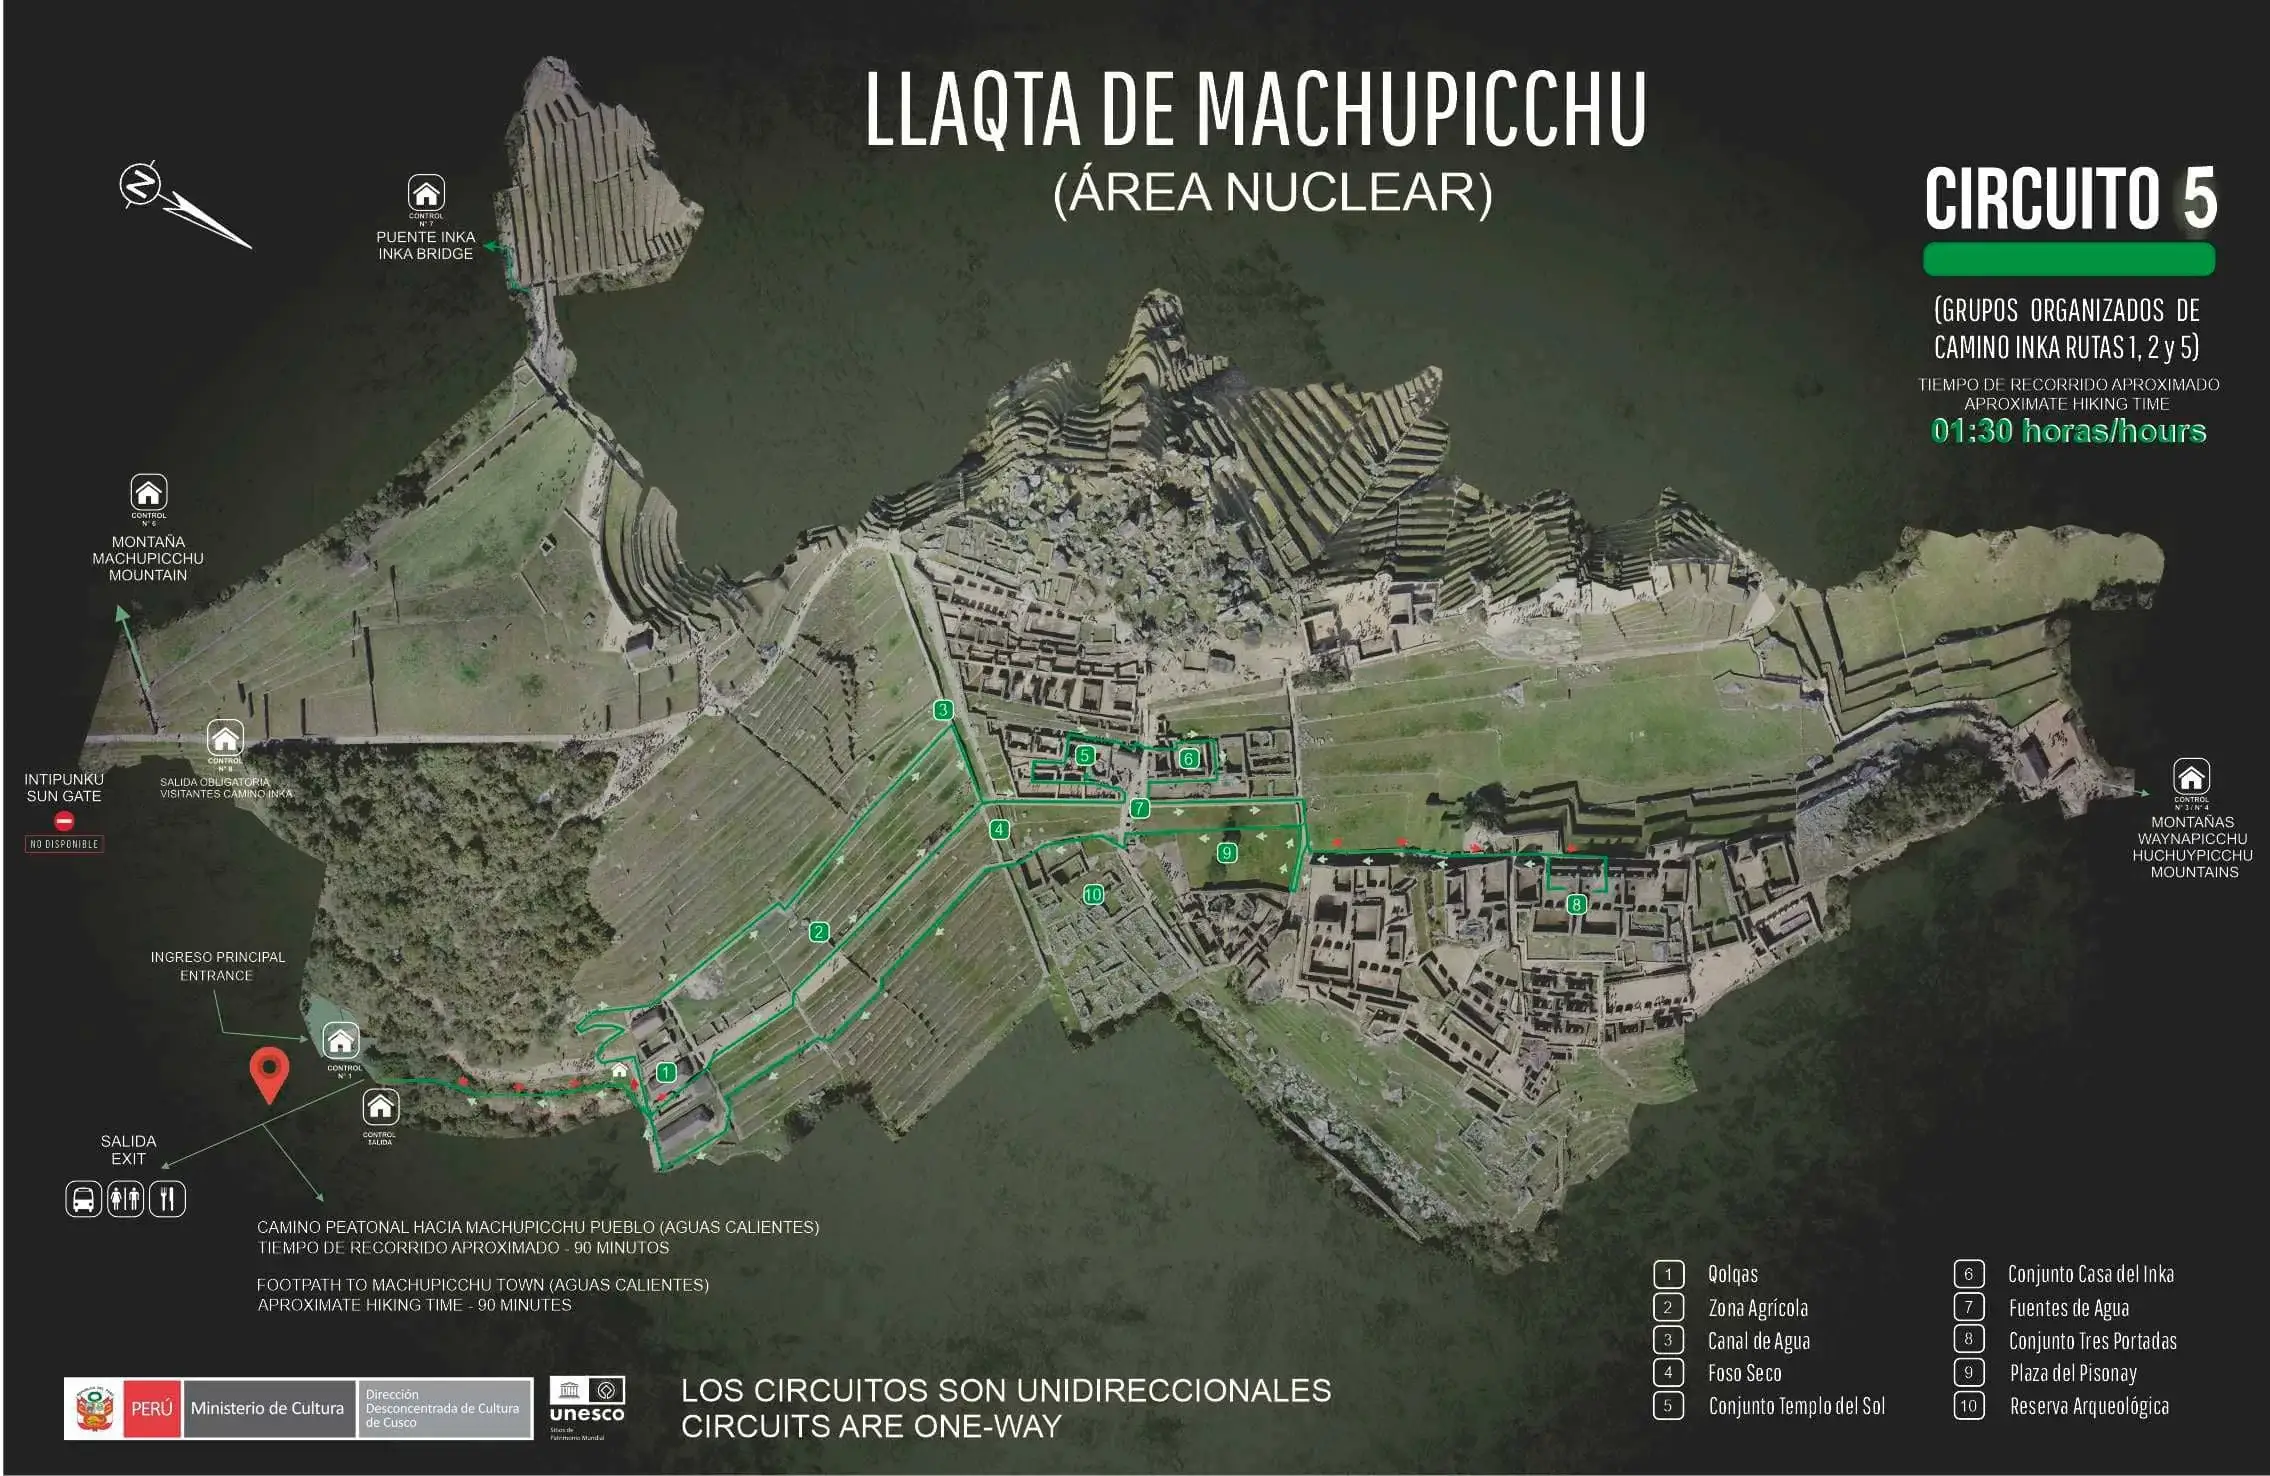 circuit 5 machu picchu - Inca Trail to Machu Picchu